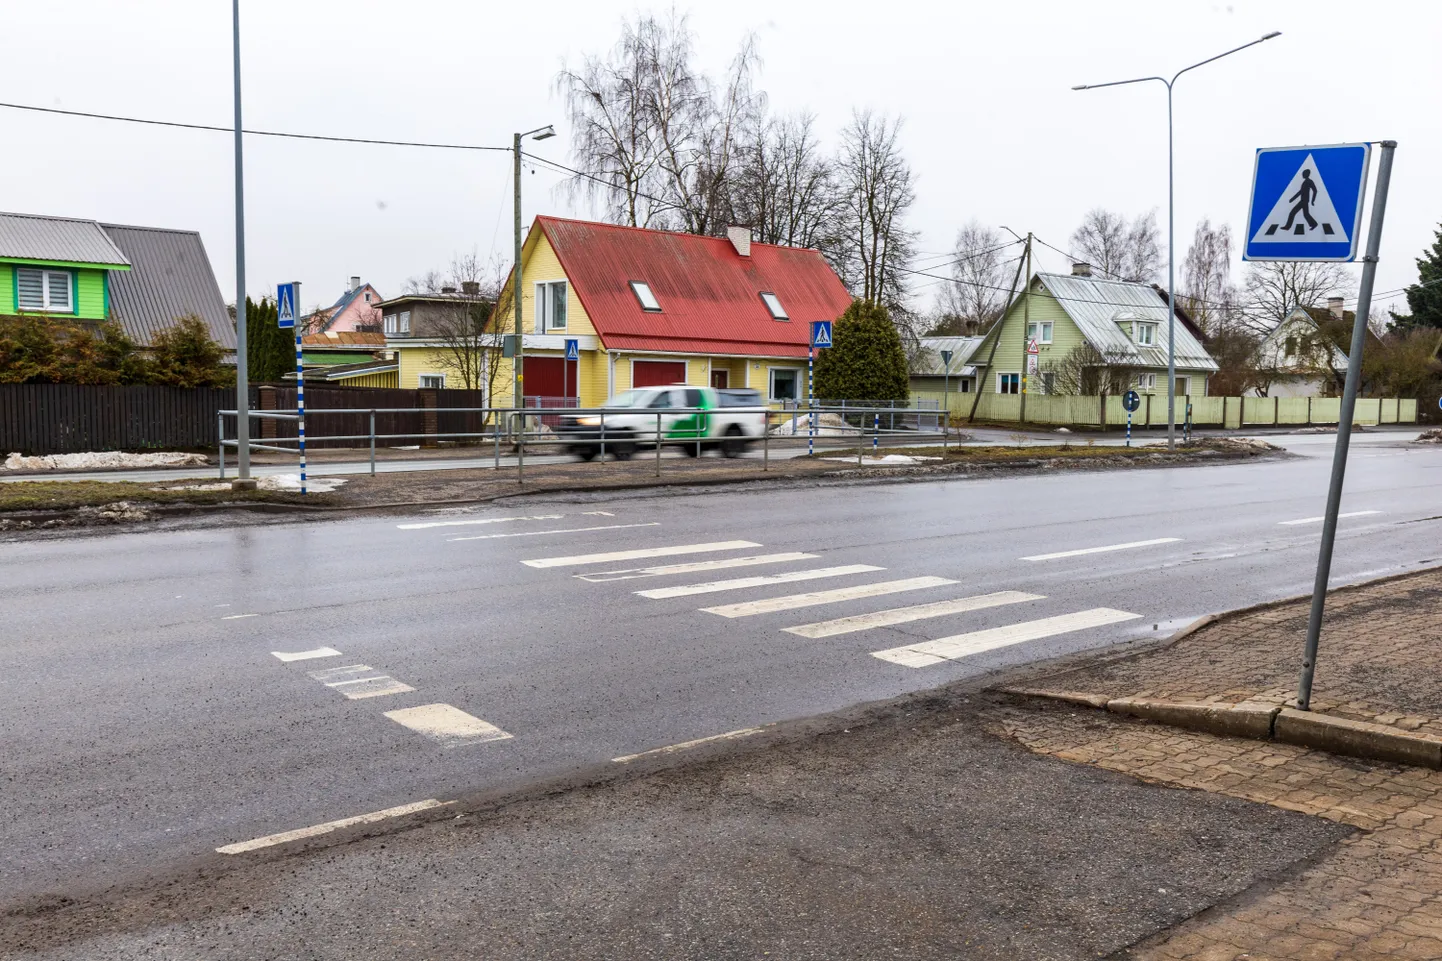 Улица Аардла – одно из самых оживленных мест Тарту, поэтому здесь происходит довольно много аварий. Авария с участием молодой женщины во вторник стала уже пятой аварией в этом же месте за последний год.